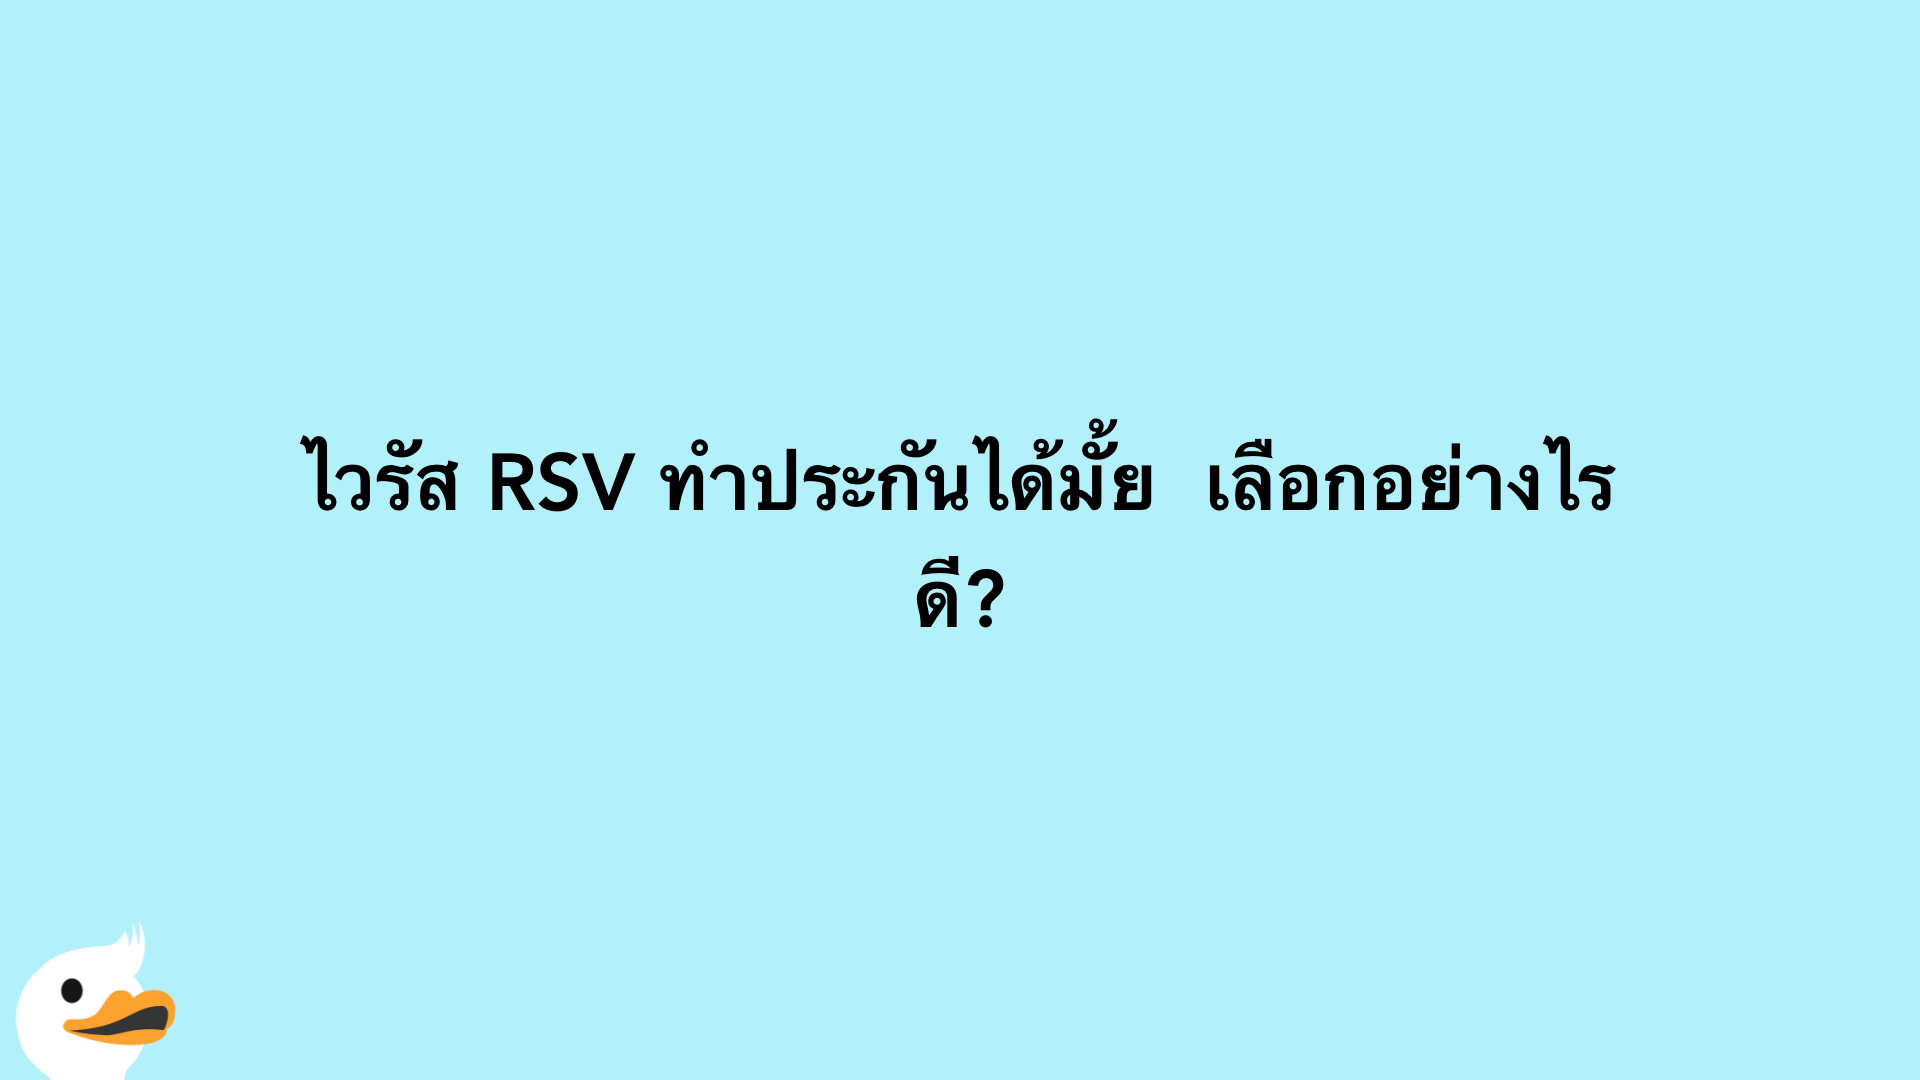 ไวรัส RSV ทำประกันได้มั้ย  เลือกอย่างไรดี?